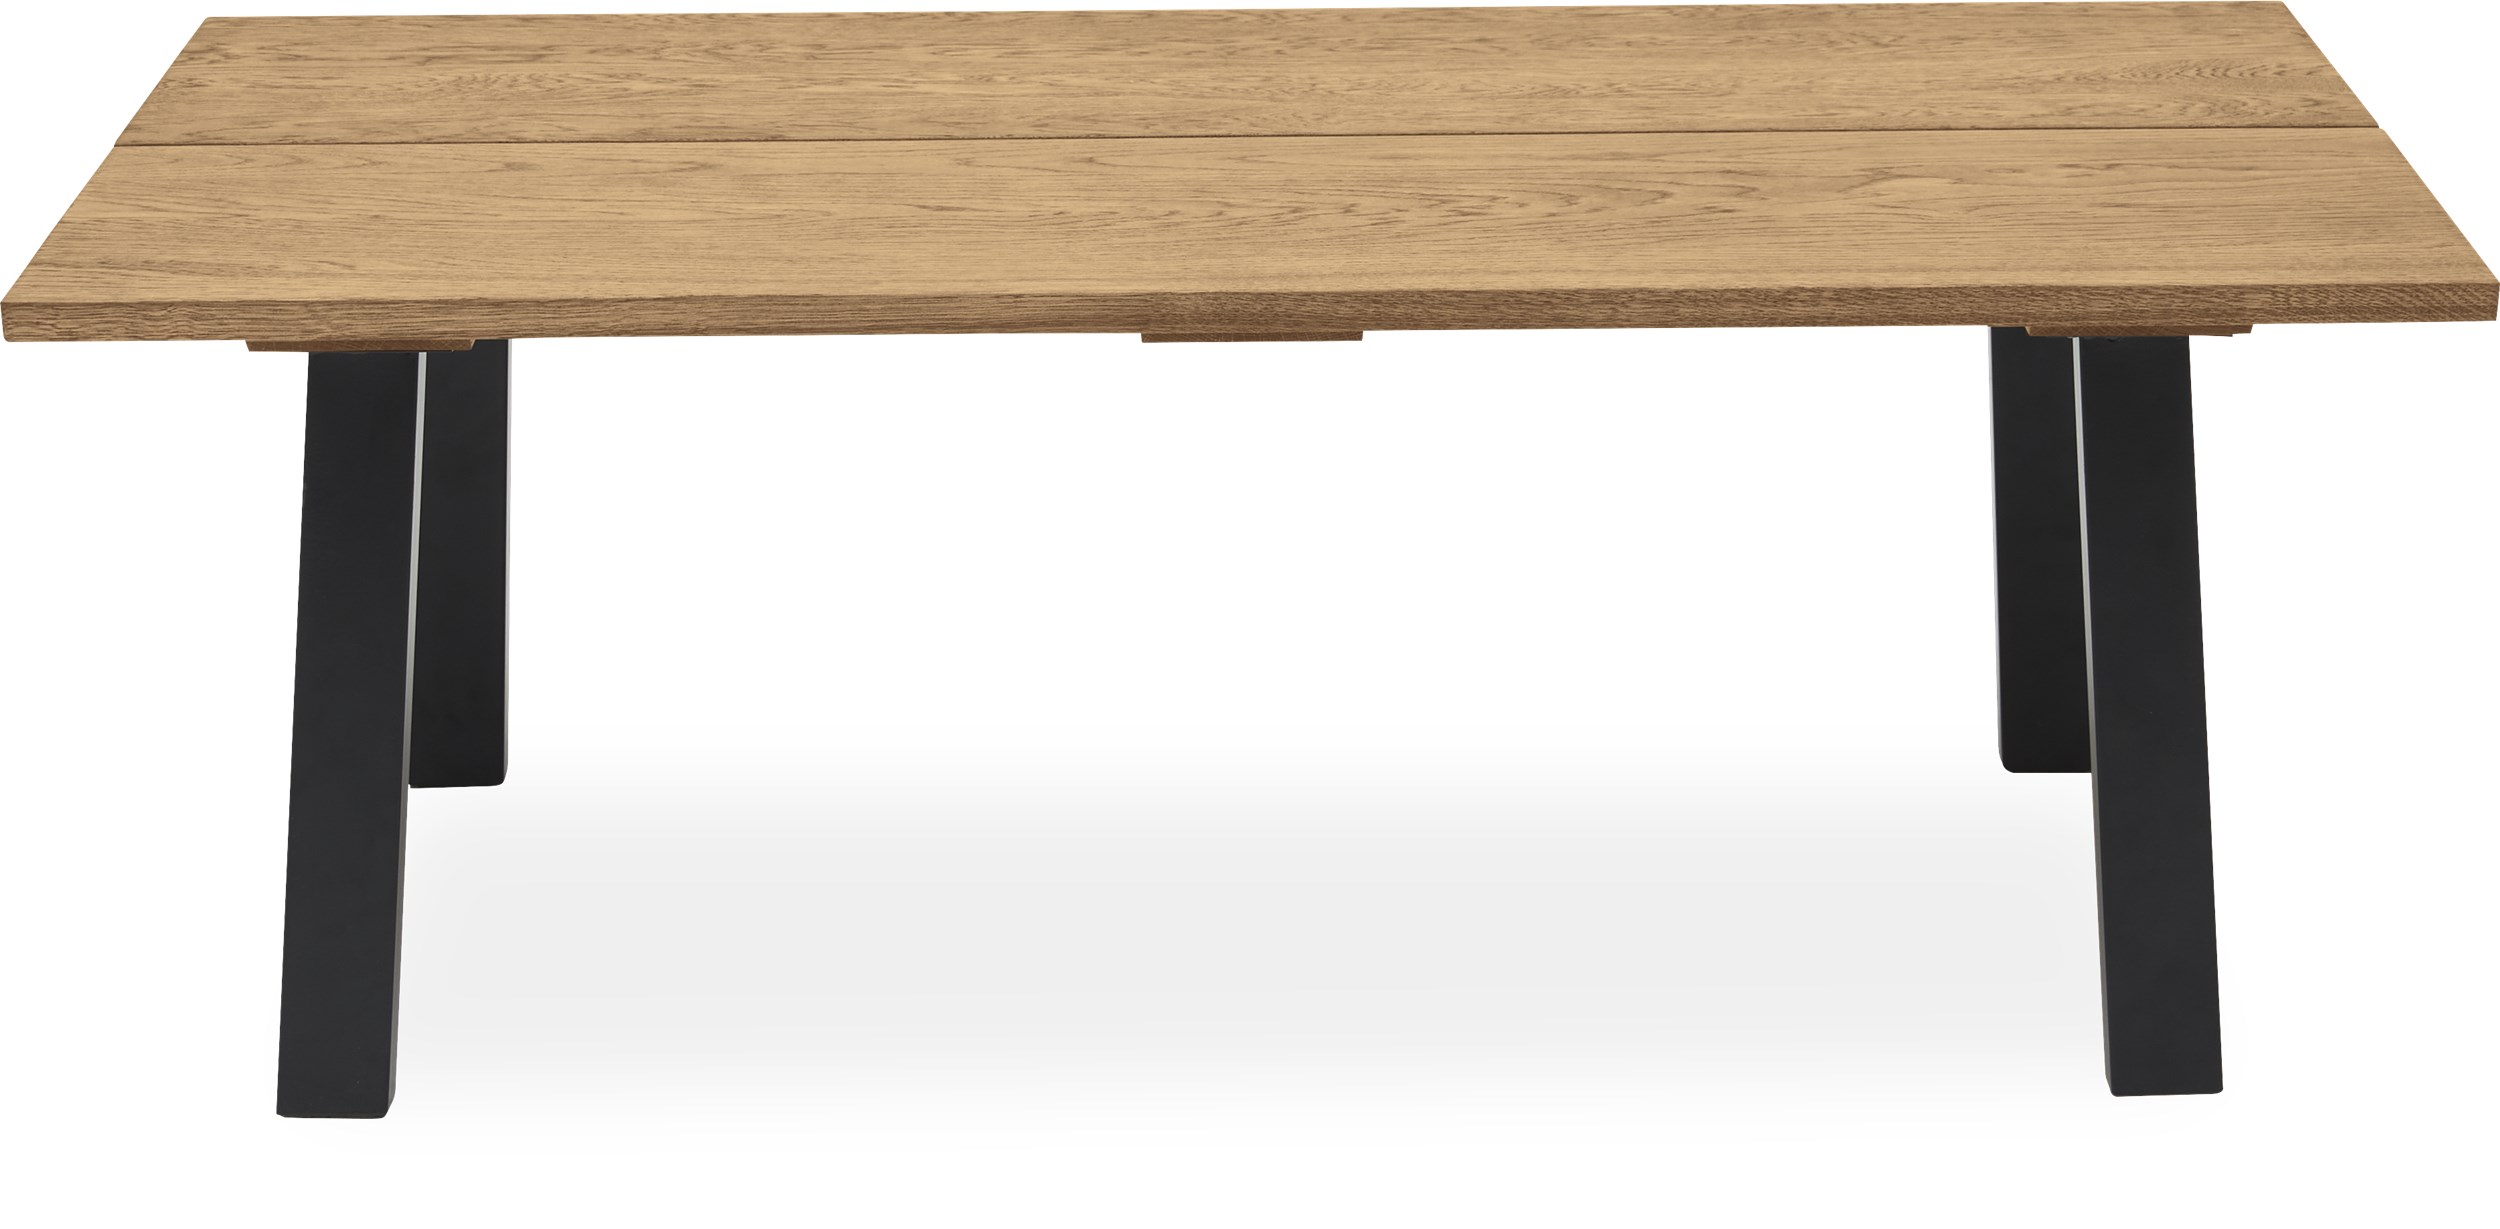 Real Sofabord 130 x 45 x 70 cm - Massiv naturolieret eg, 2 planker med skrå kant og ben i sort pulverlakeret metal